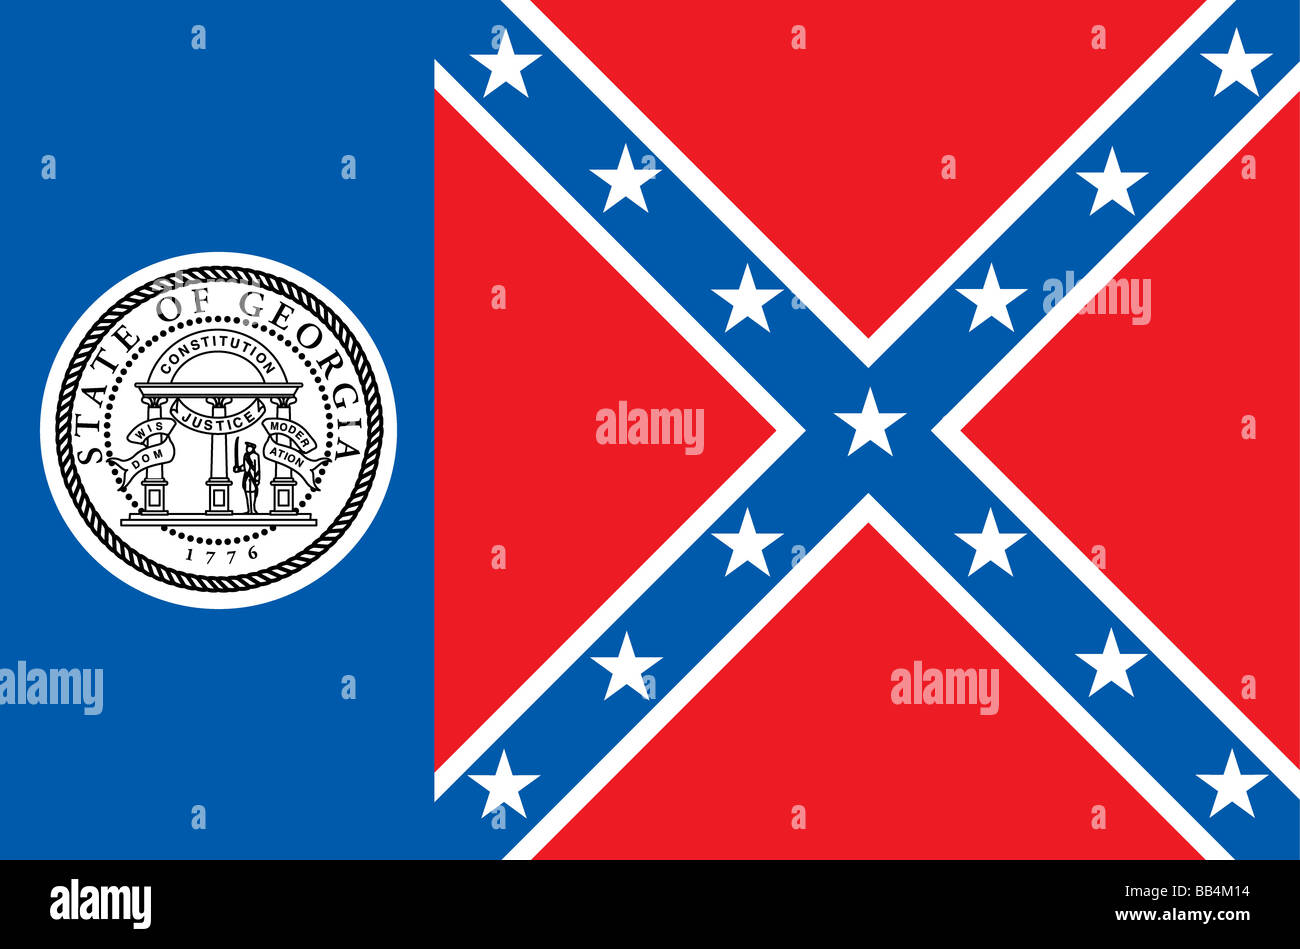 Bandera histórica de Georgia, un estado en el sur de los Estados Unidos de América, a partir del 1 de julio de 1956 al 31 de enero de 2001. Foto de stock